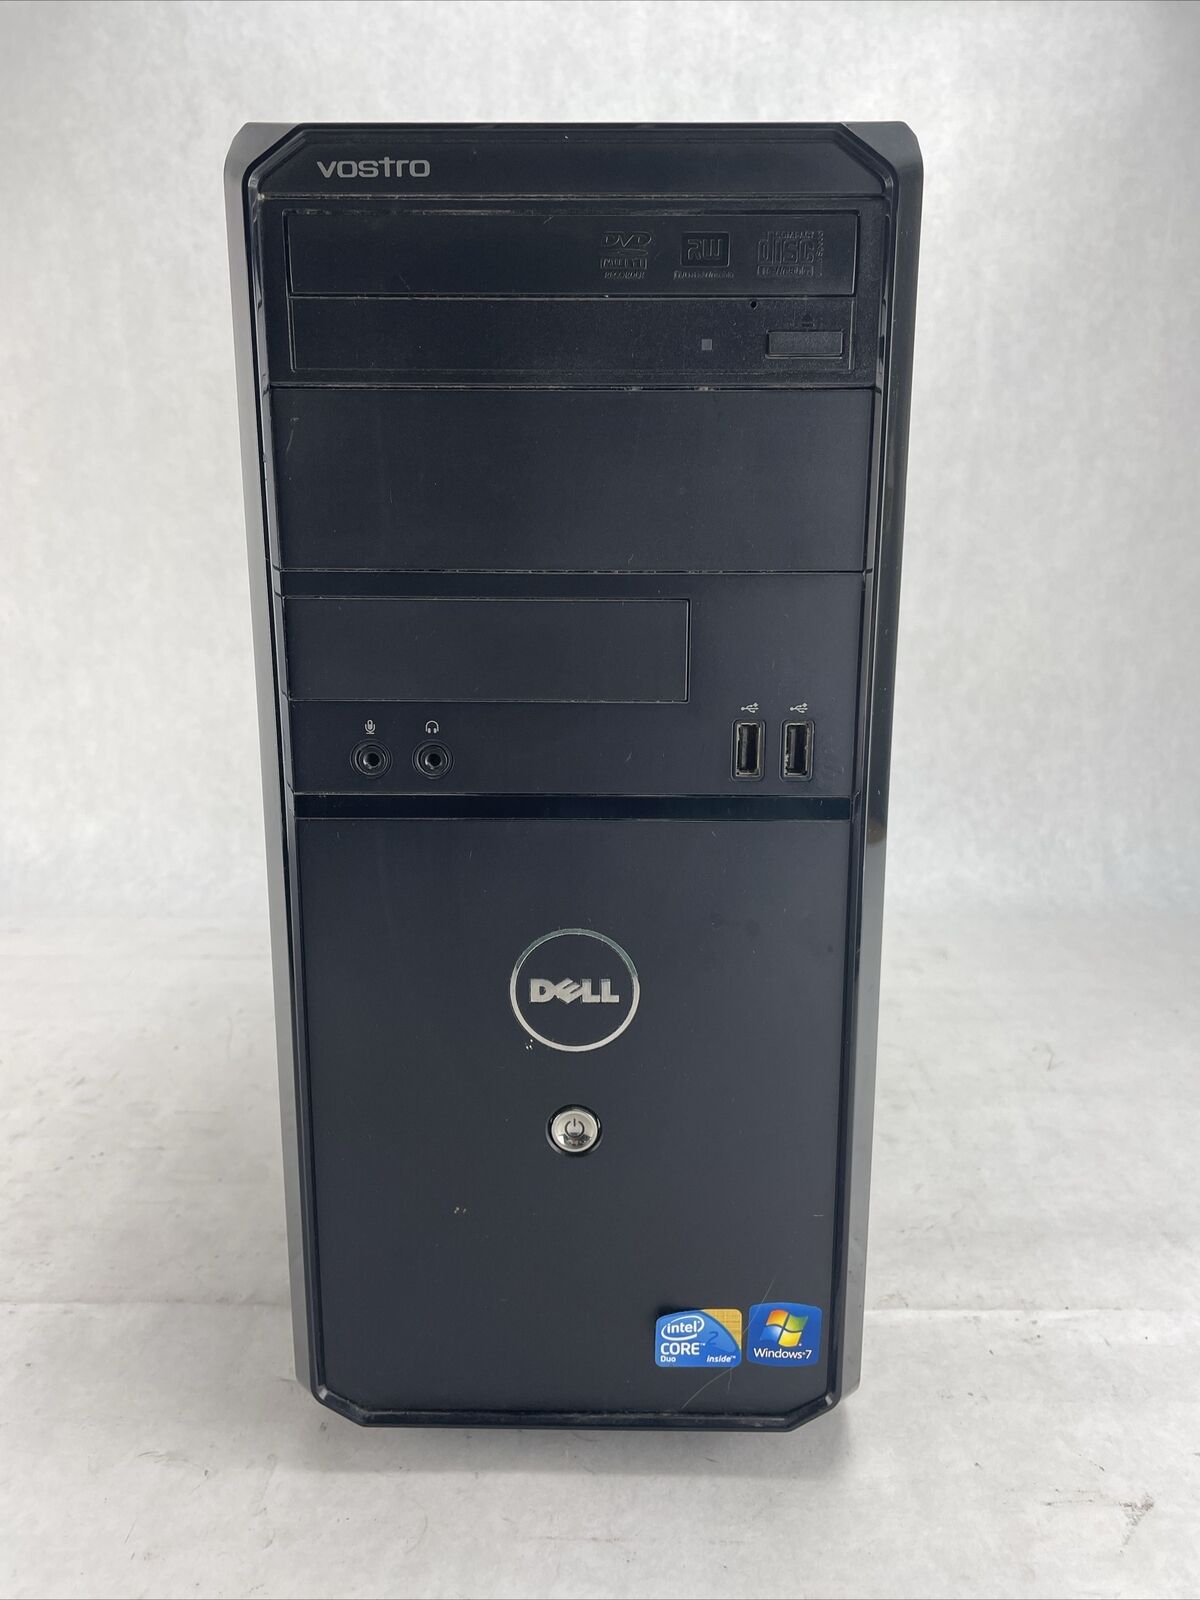 Dell Vostro 230 MT Intel Core 2 Duo E7500 2.93GHz 2GB RAM No HDD No OS